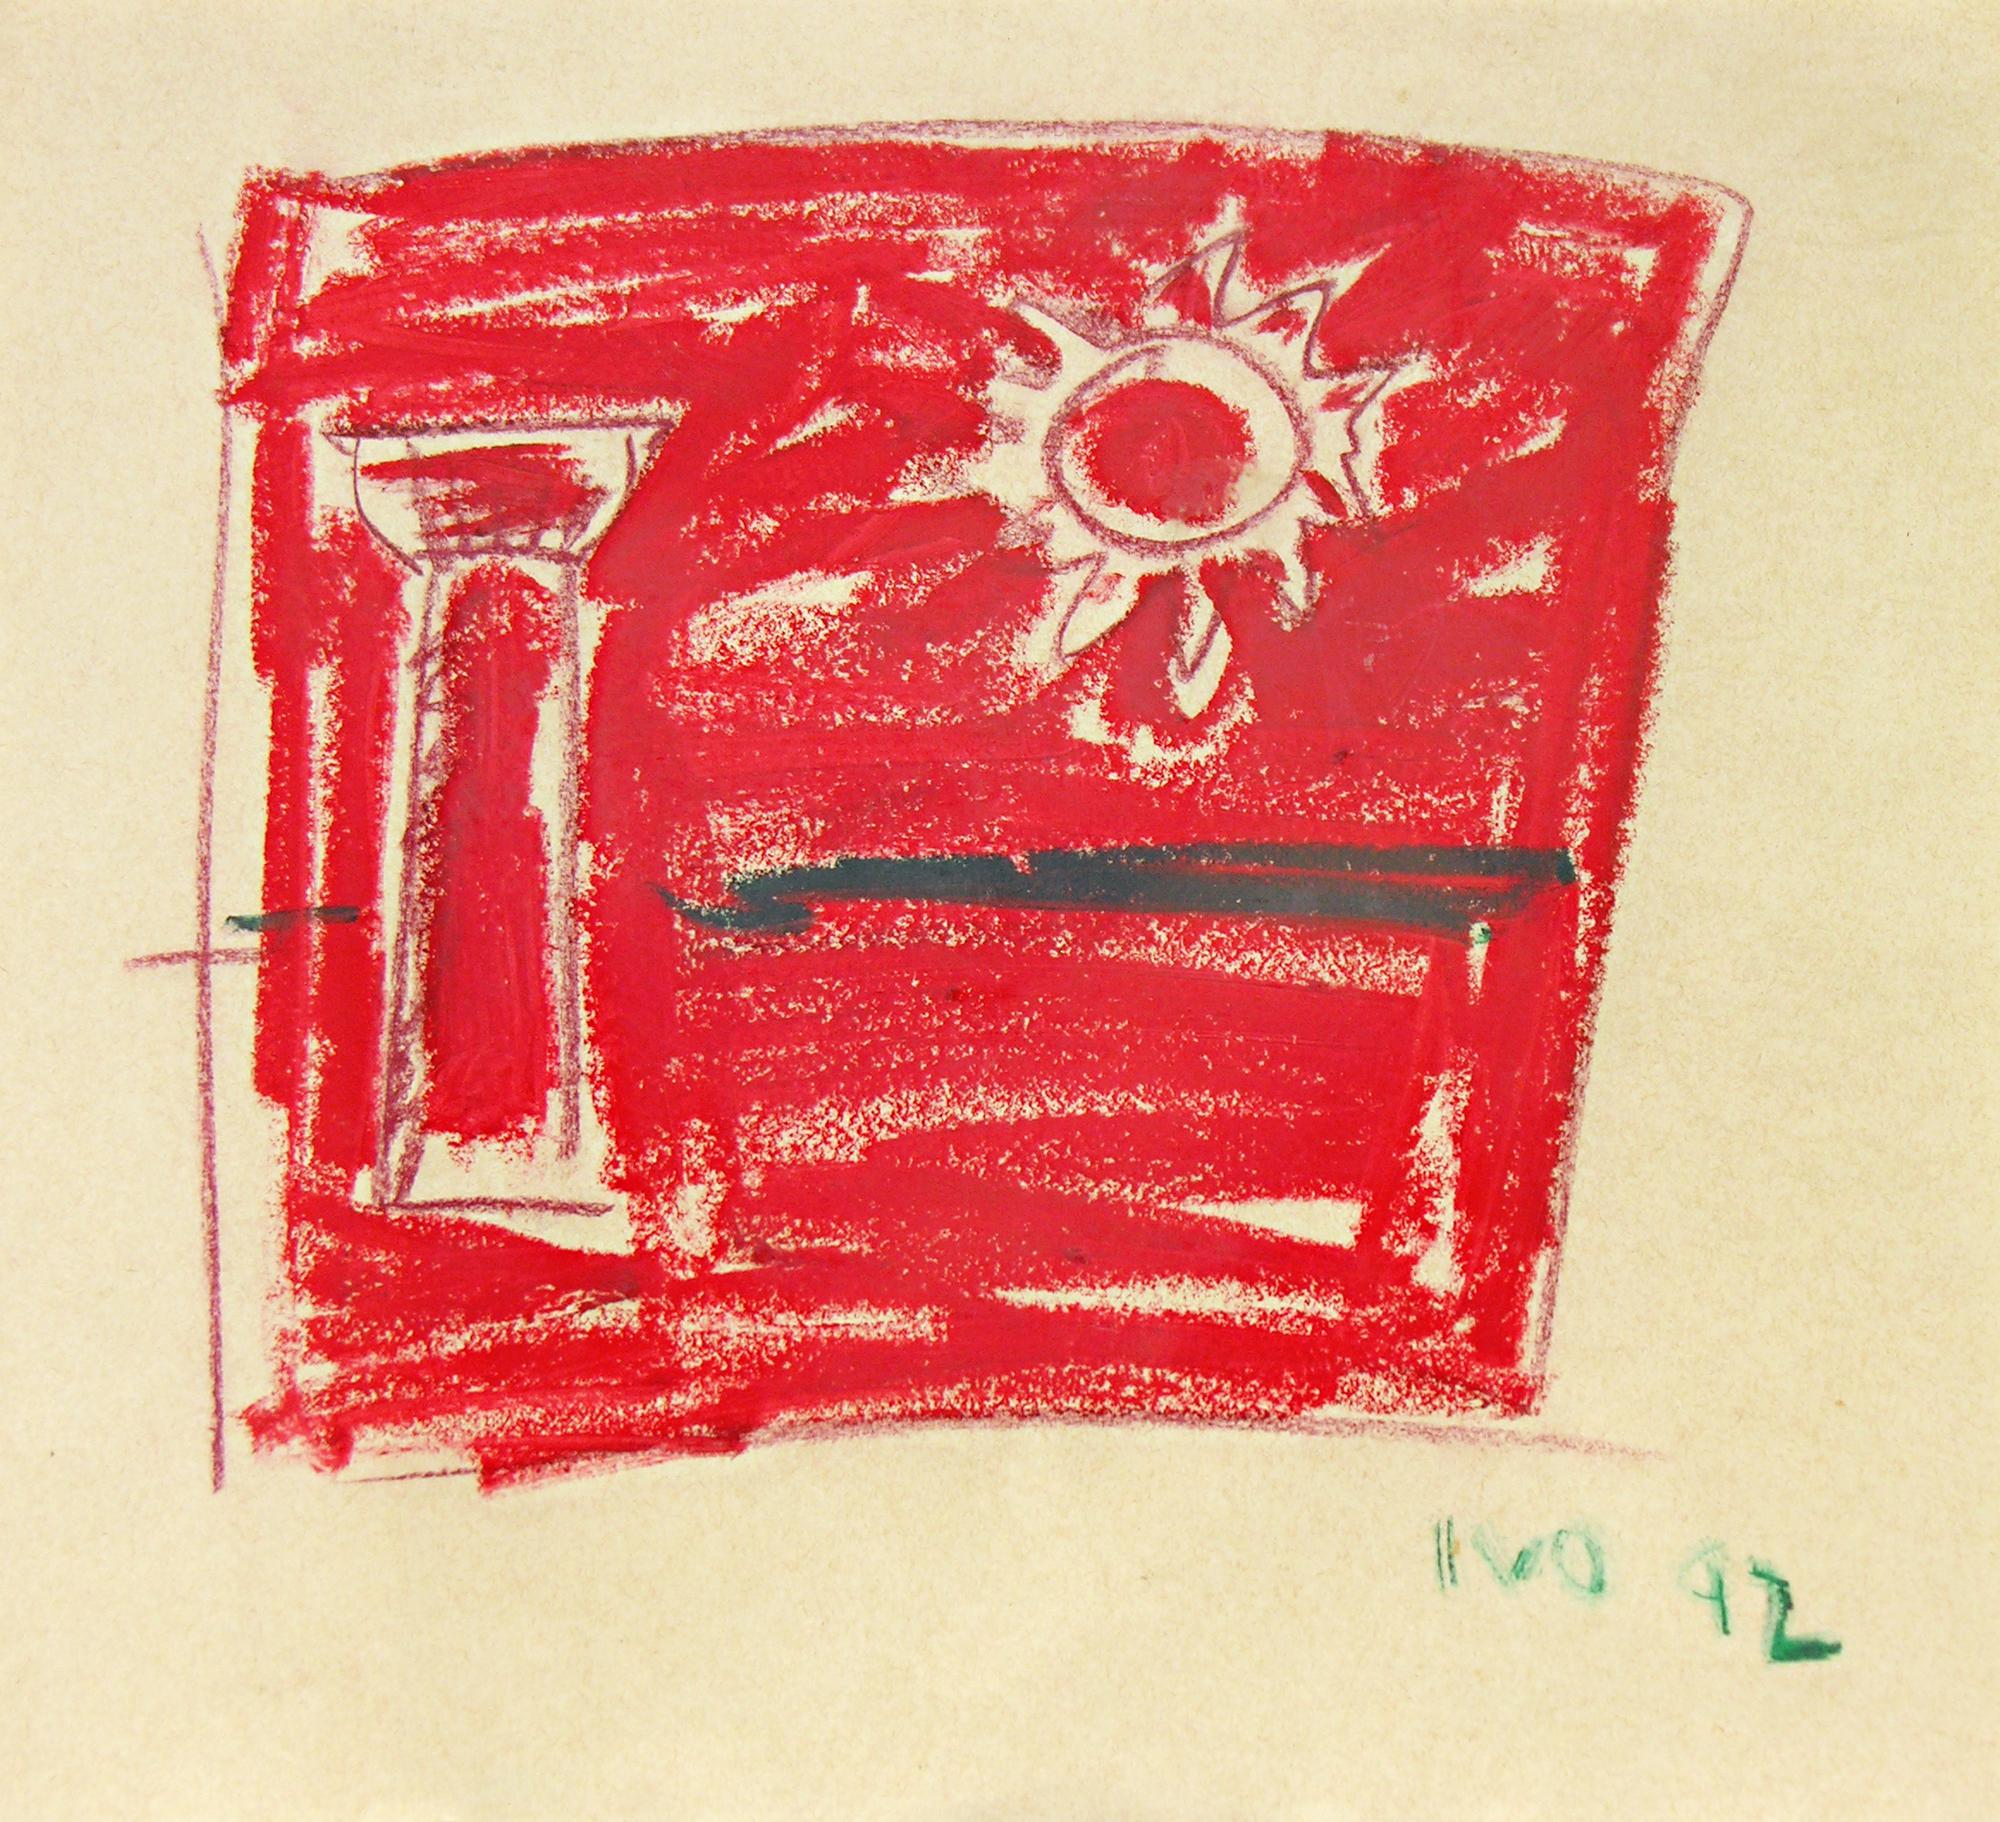 Ivo Ringe (1951) COMPOSIZIONE ARTE CONCRETA tecnica mista su carta, cm 30x33...